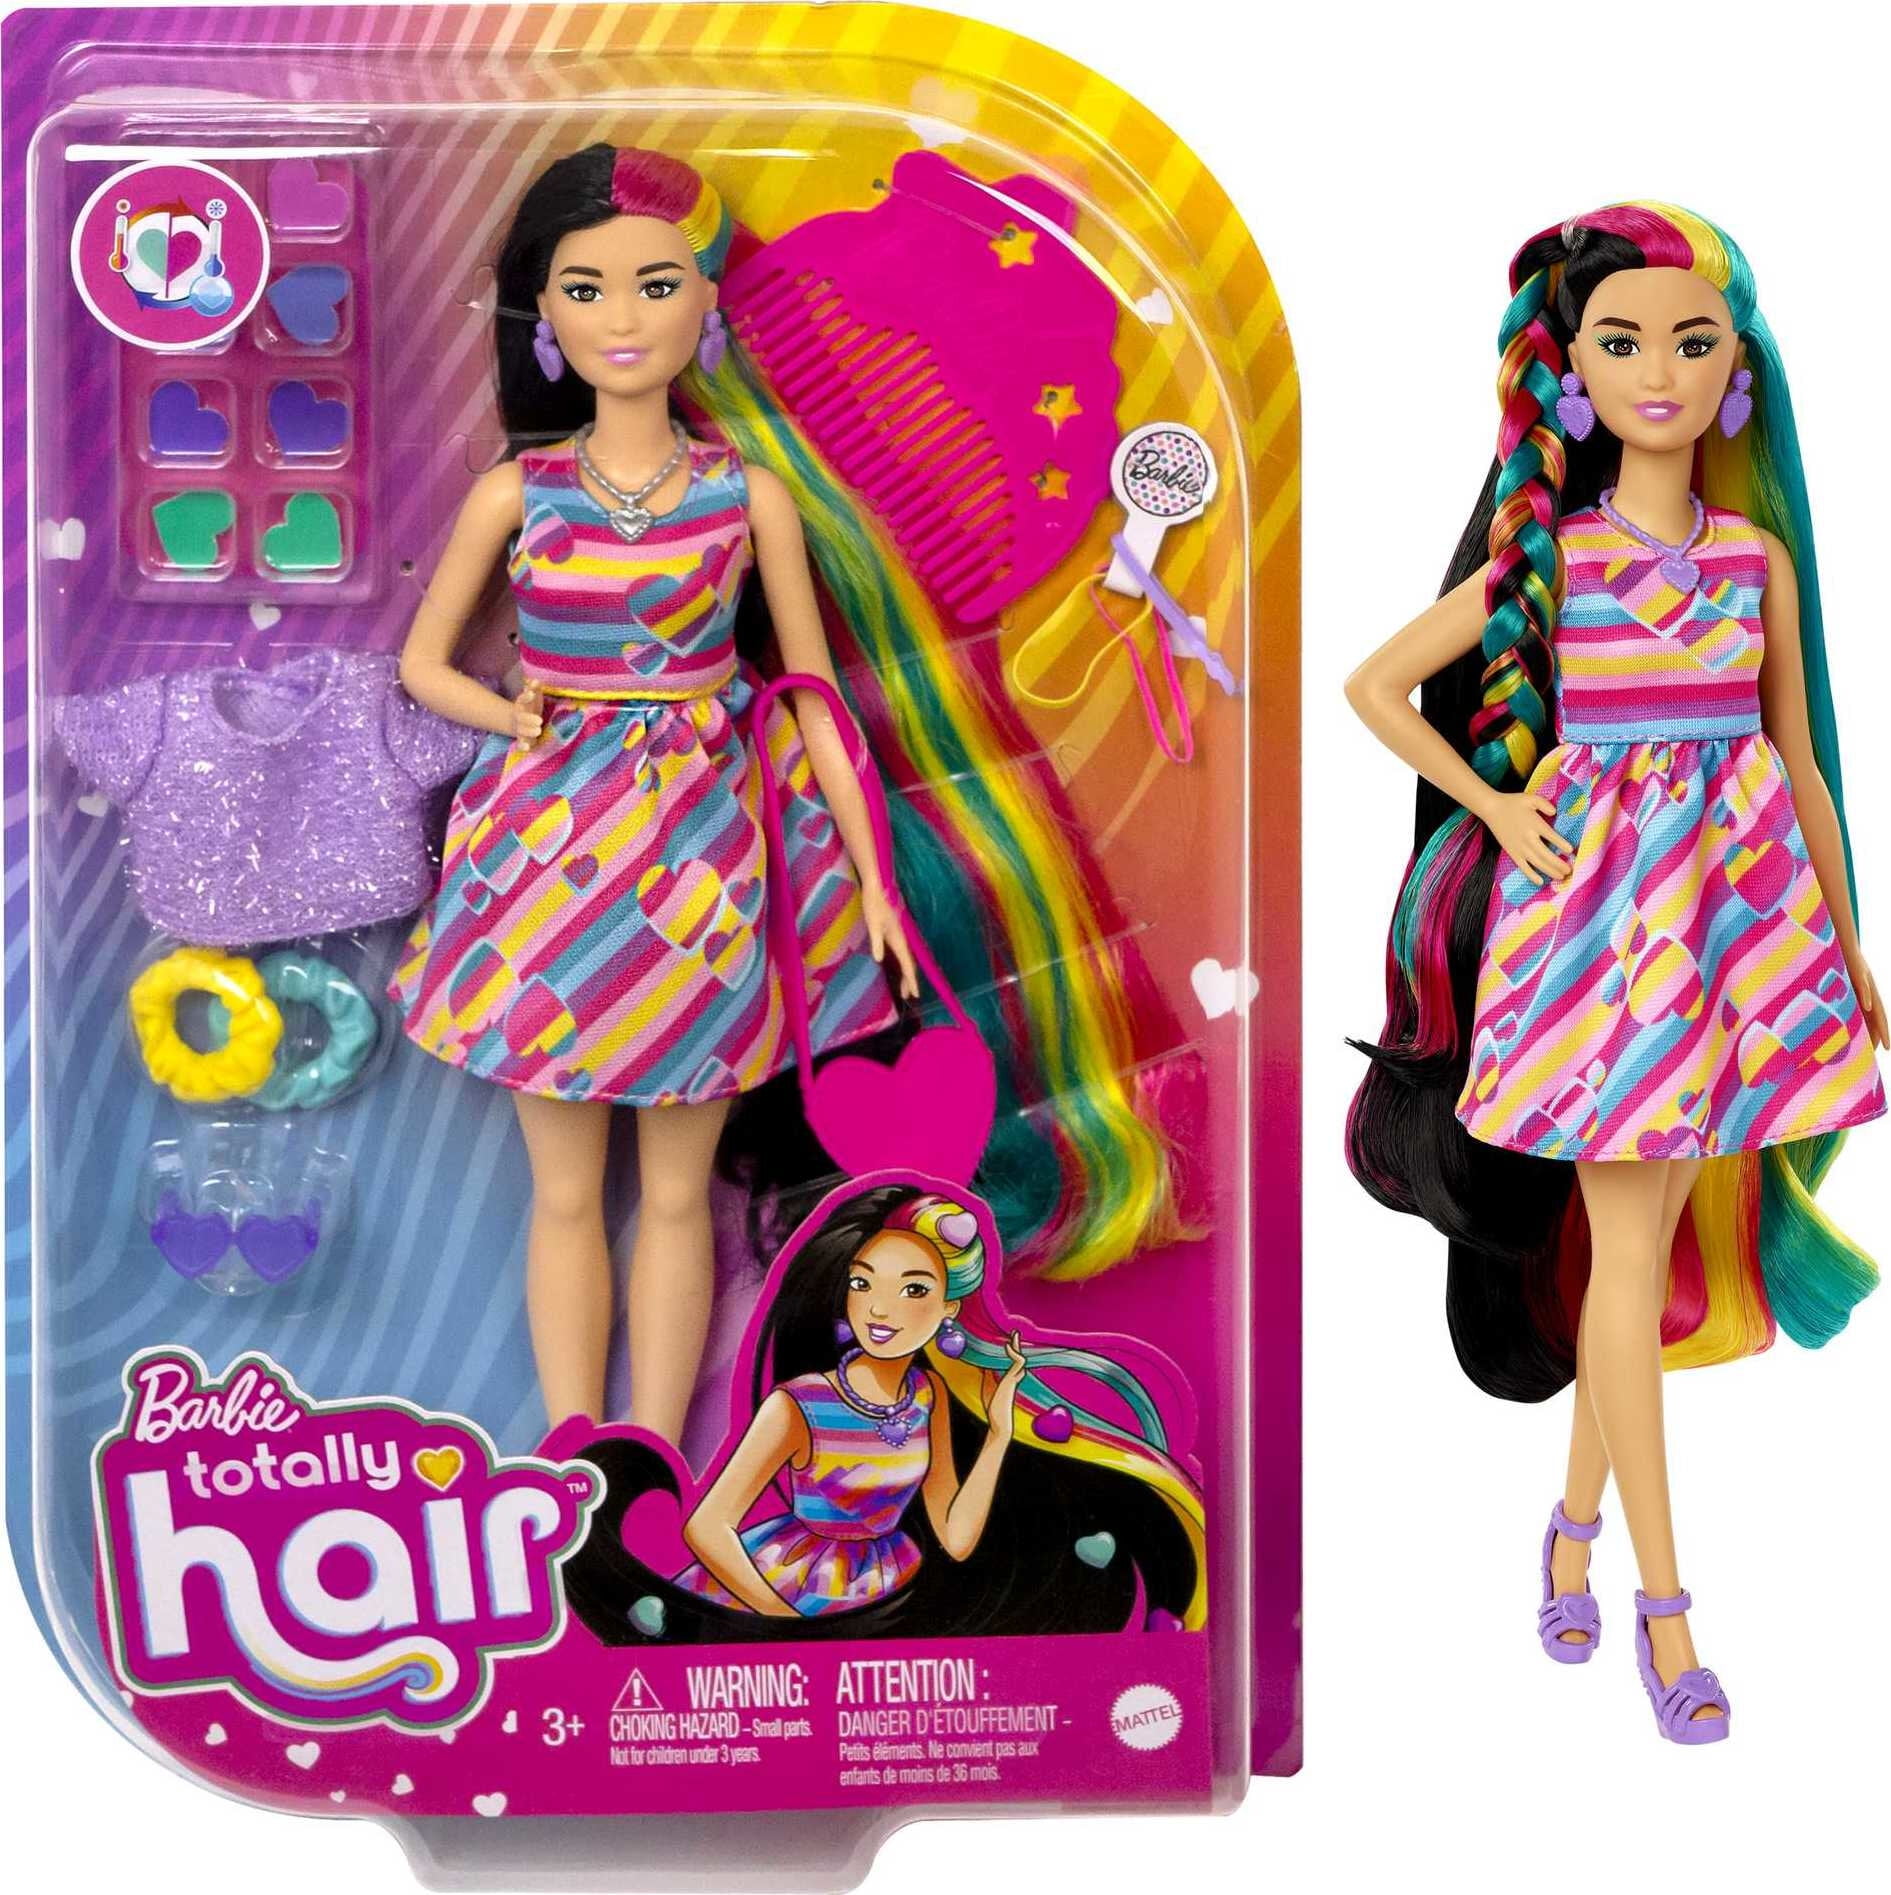 Stunning Mattel Barbie Rainbow Sparkle Hair Brand New in Original